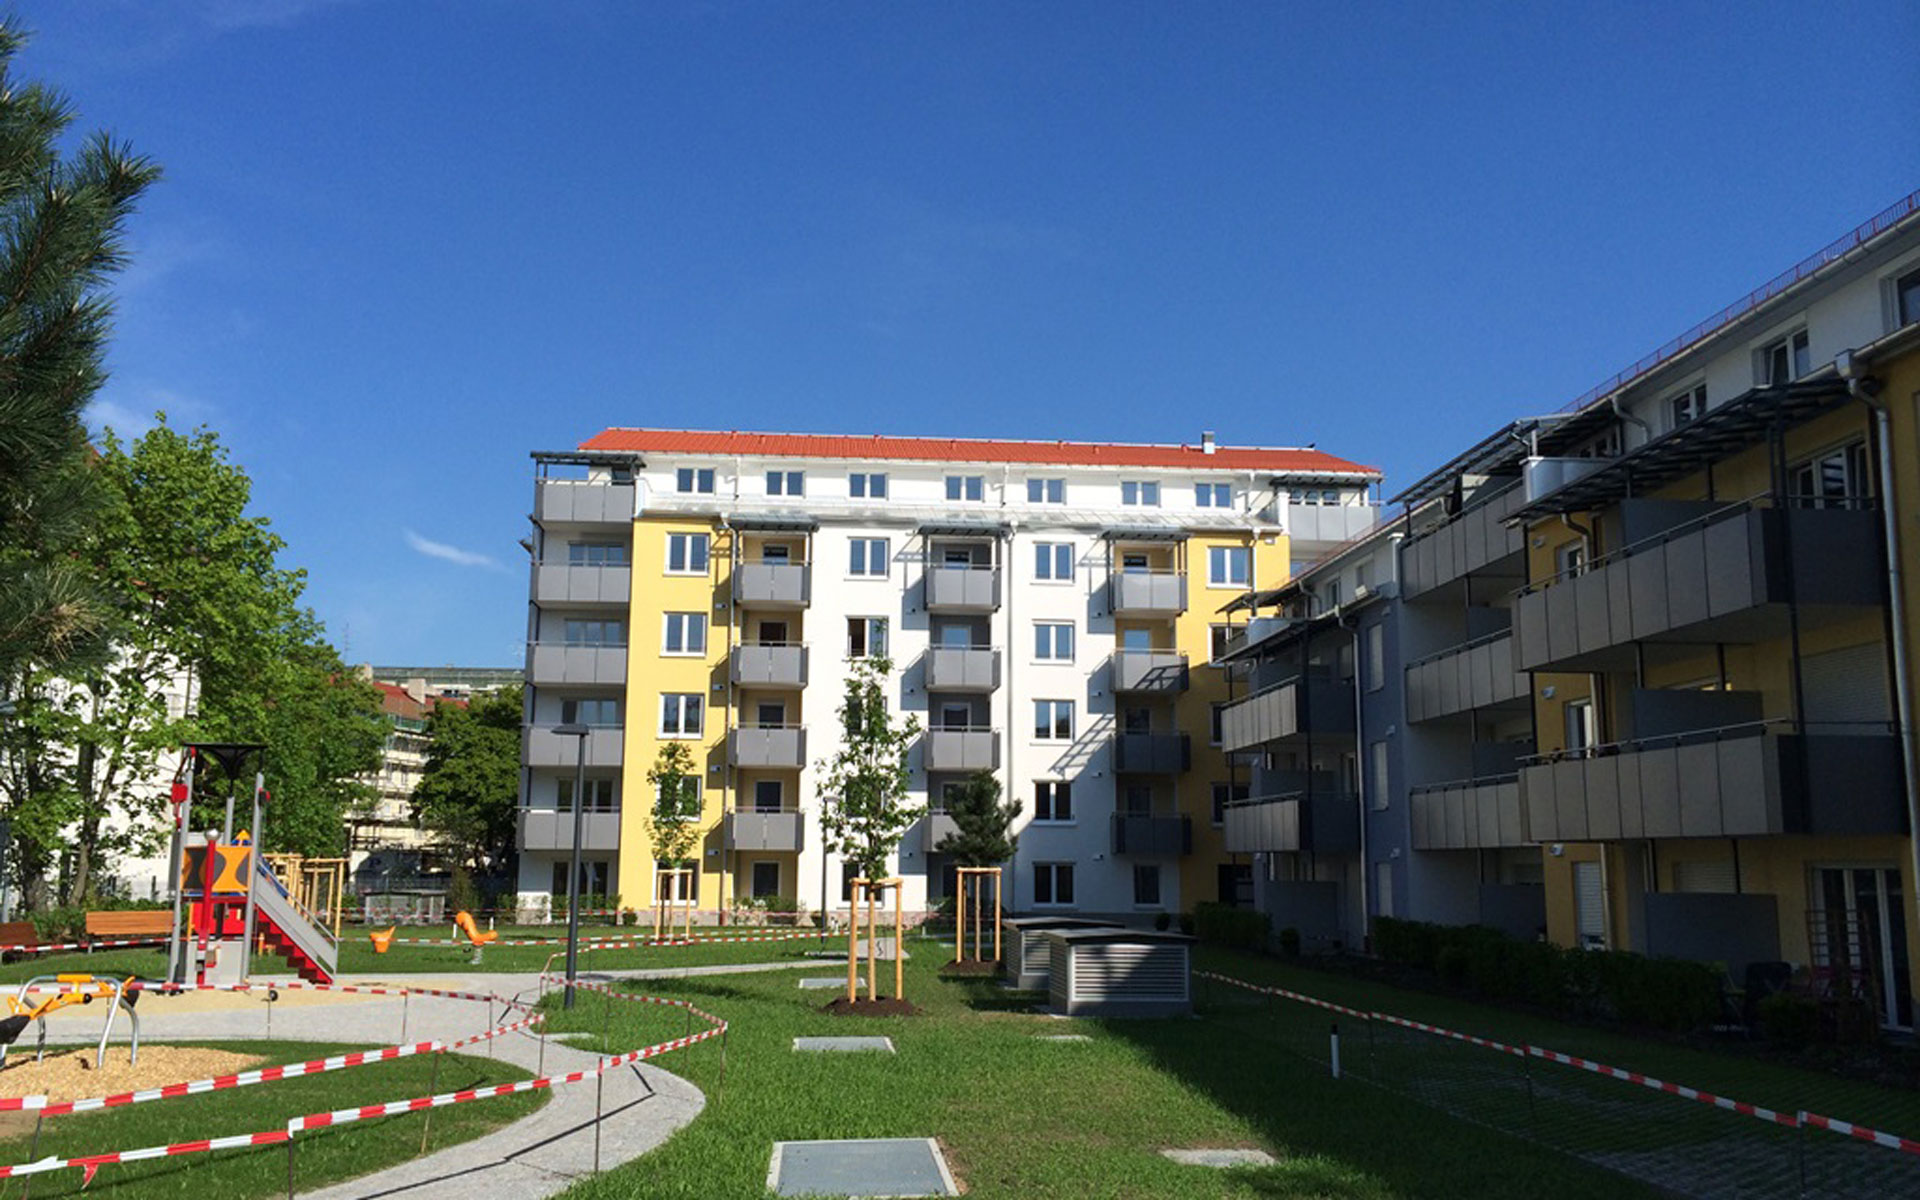 Wohnanlage mit 48 Wohneinheiten, München – Aufstockung bzw. Neubau